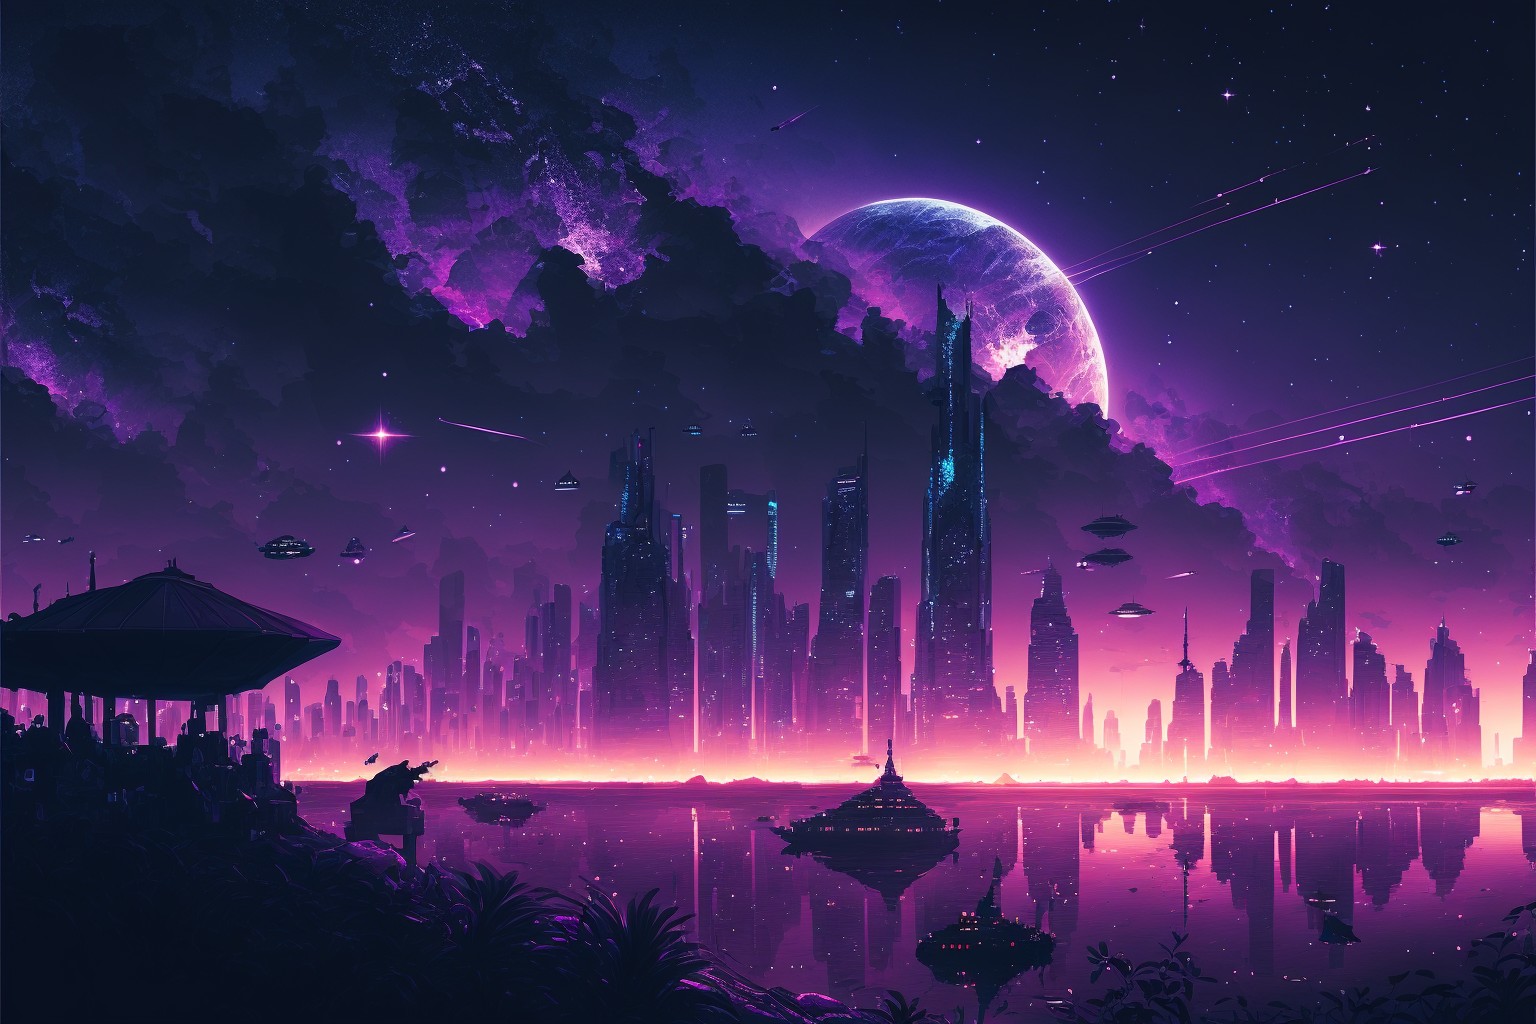 City skyline night view under purple sky atmosphere